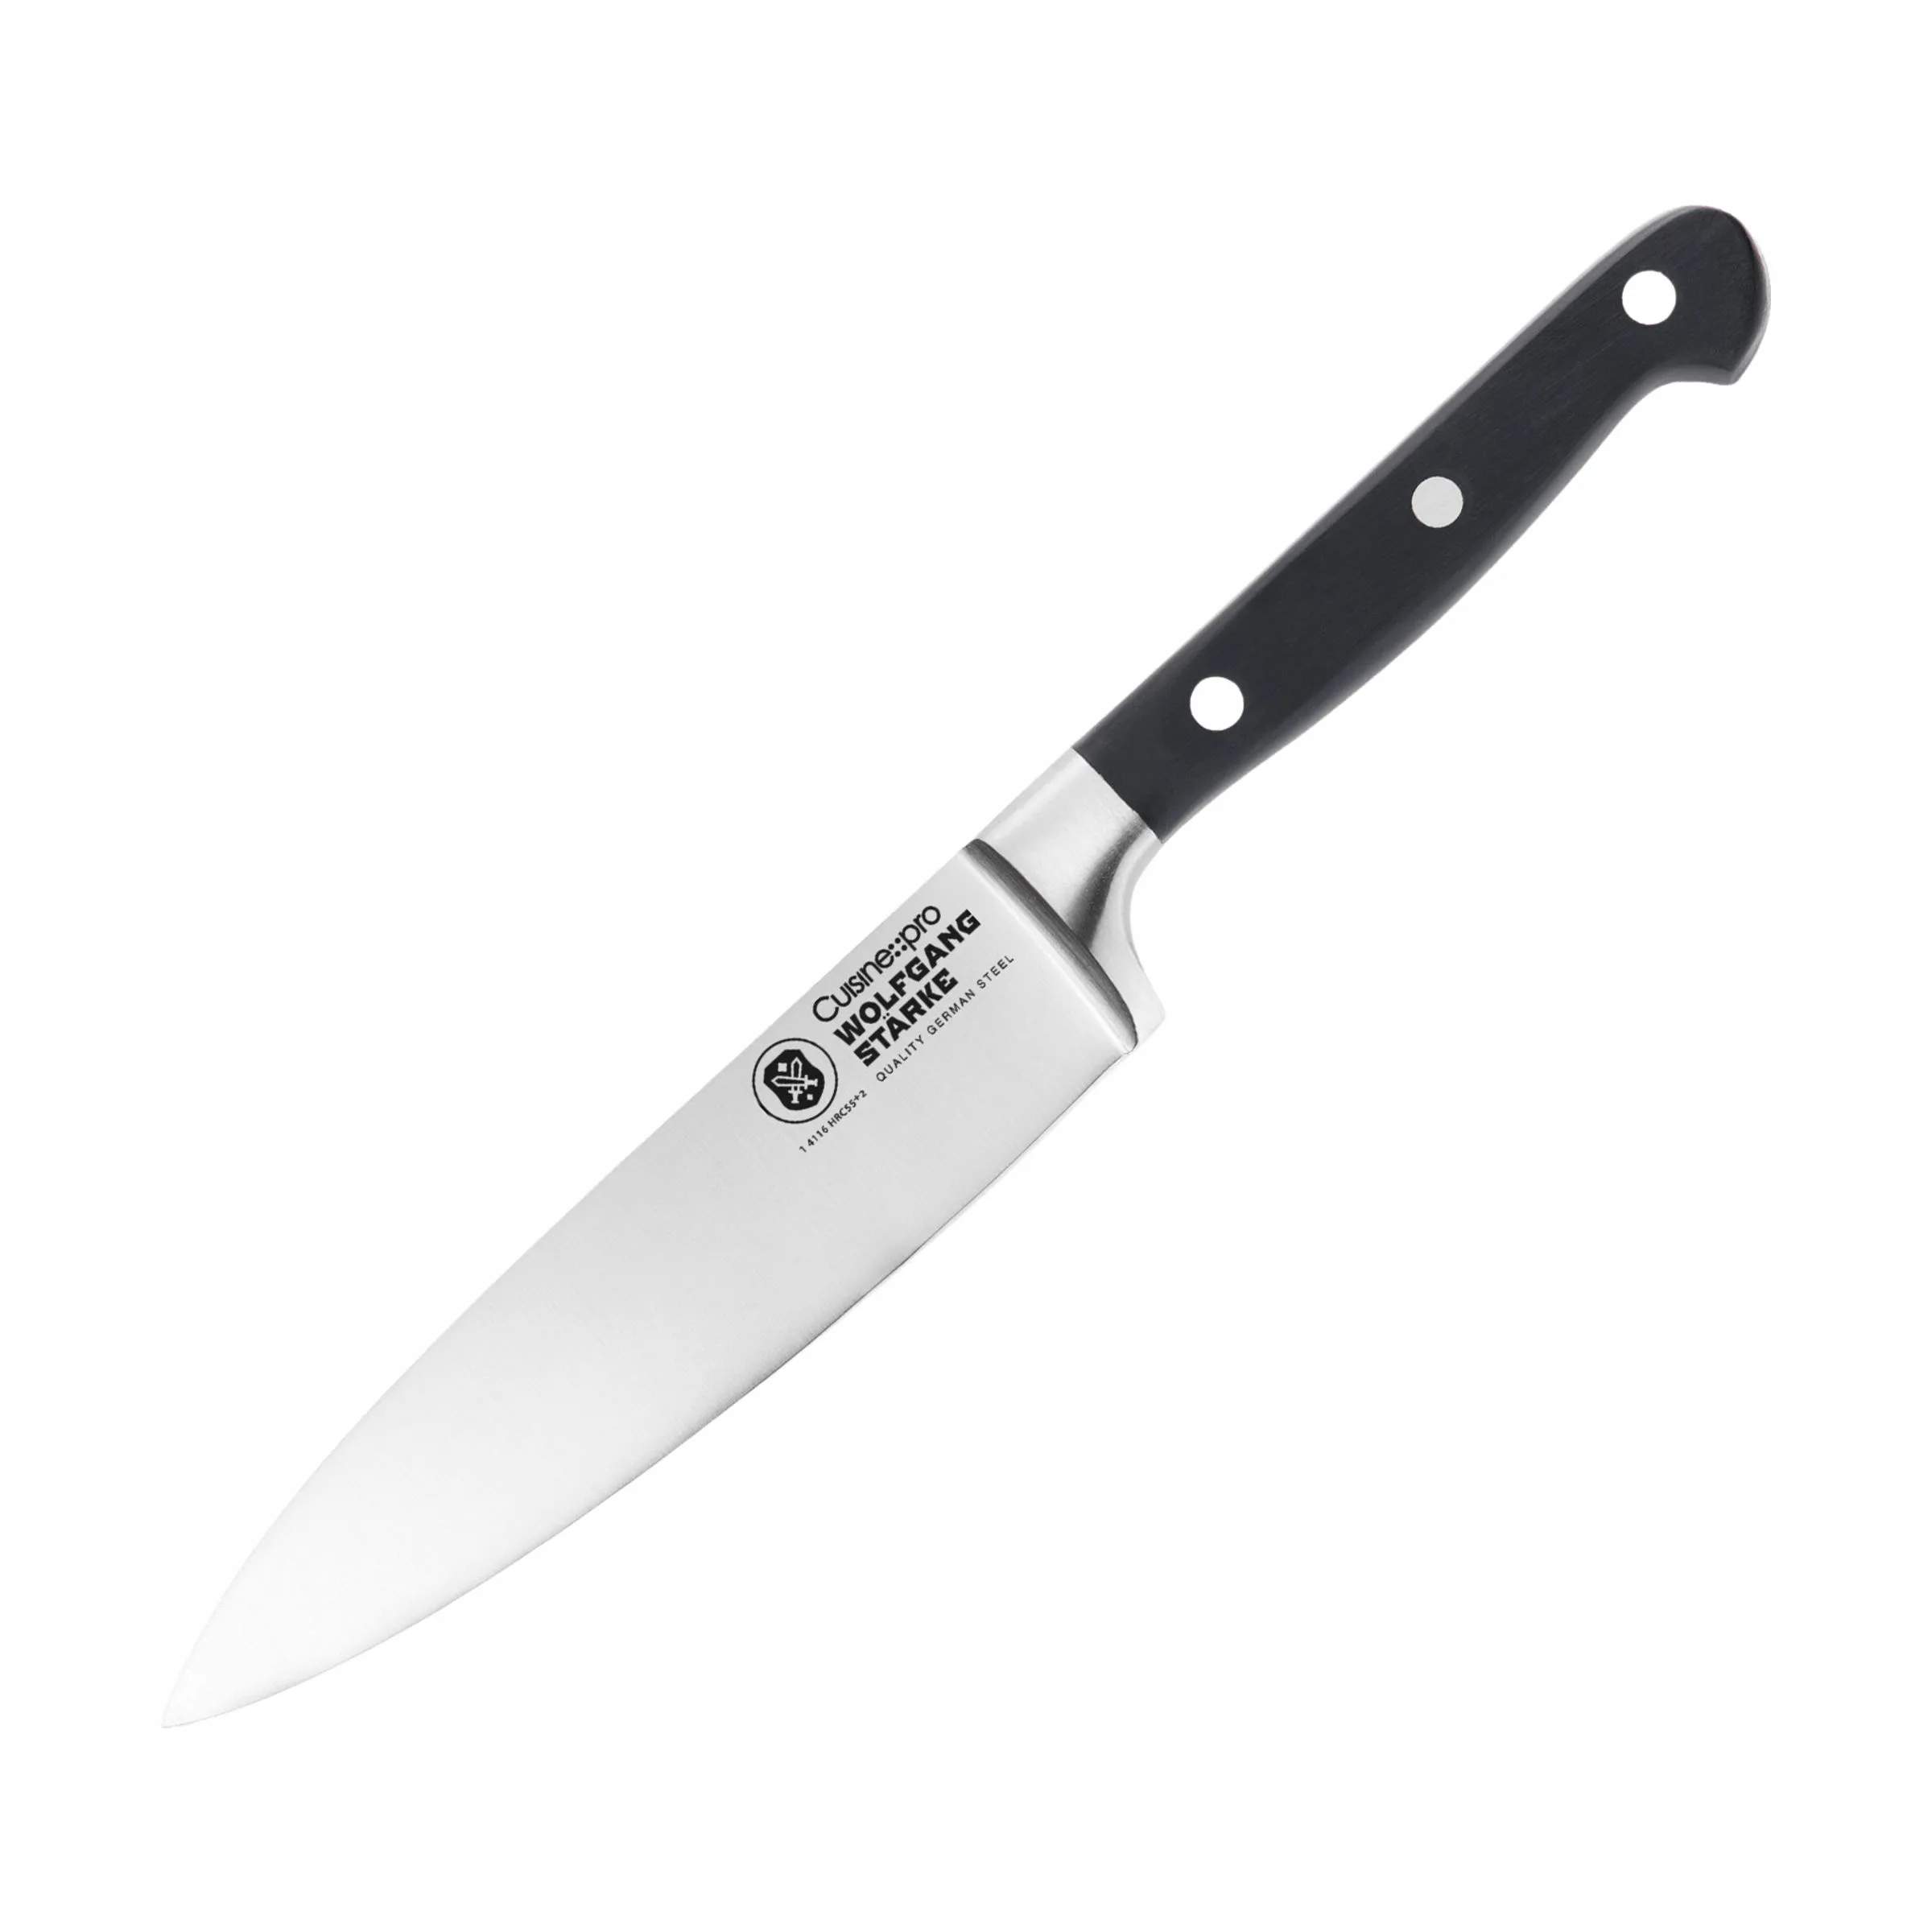 WOLFGANG STARKE™ Kokkeknive, sølv/sort, large